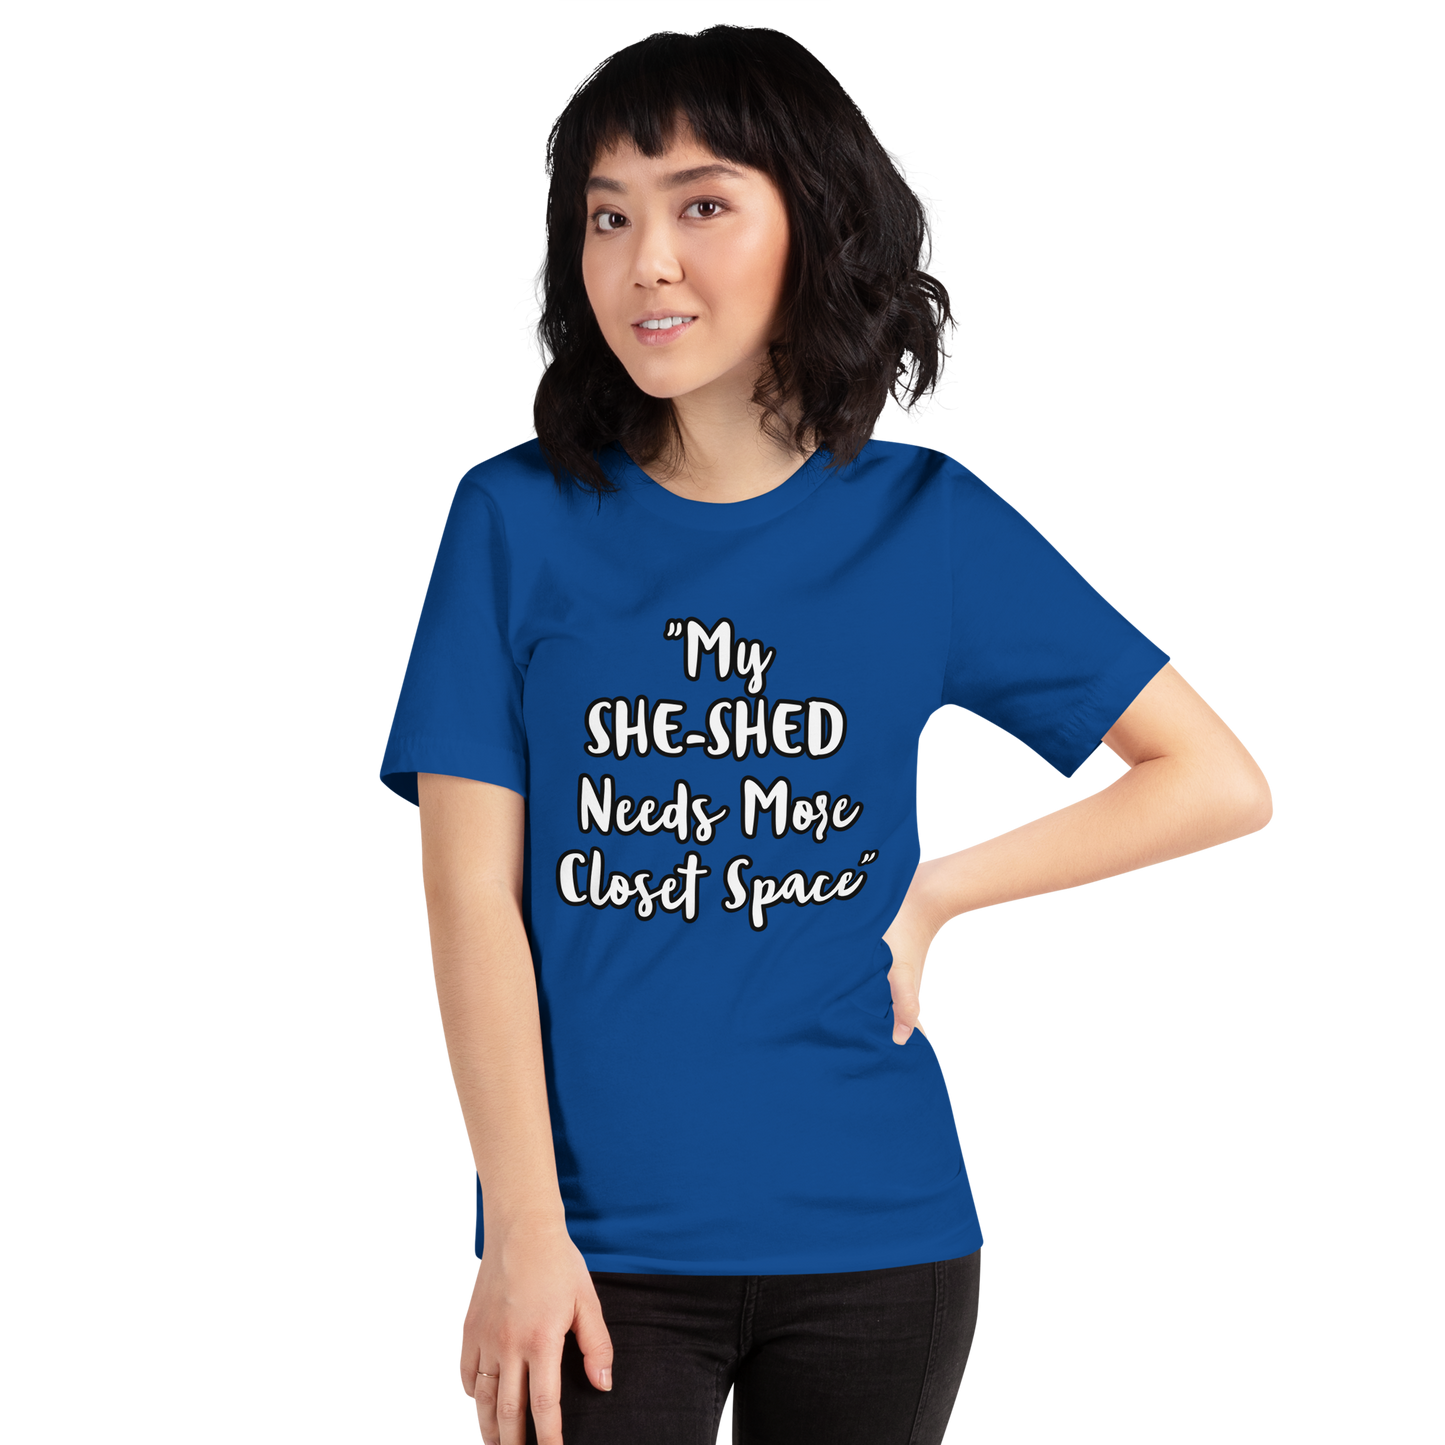 She-Shed Closet Space Shirt